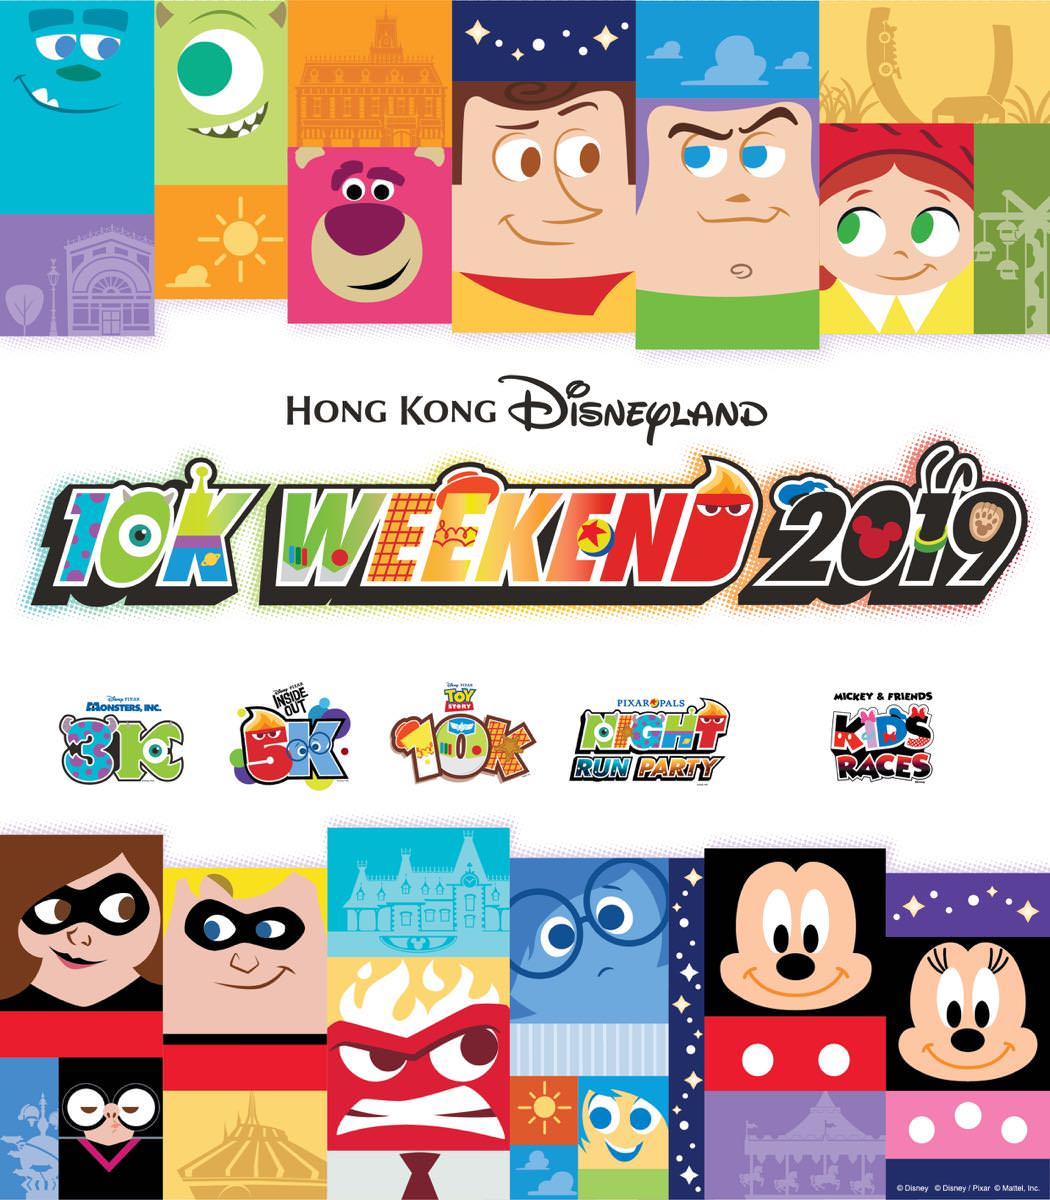 香港ディズニーランド・リゾート「10Kウィークエンド2019」